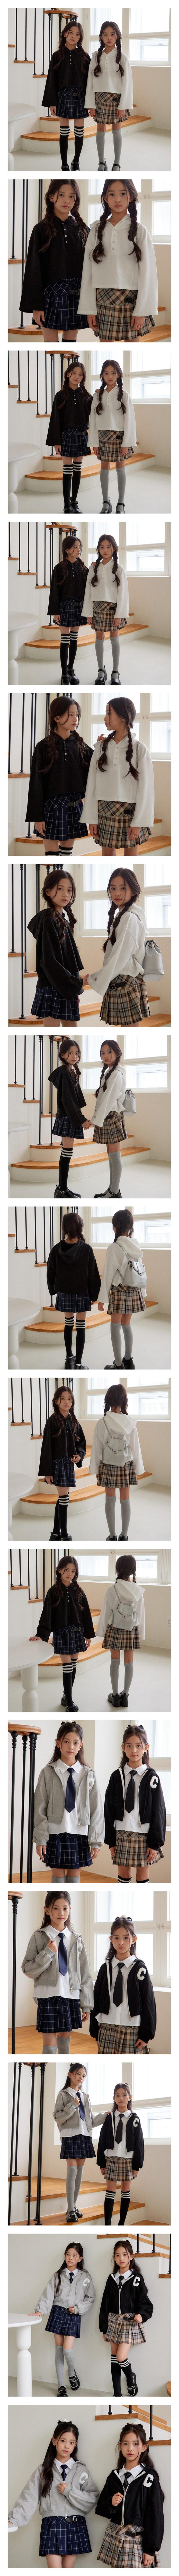 Sm2 - Korean Children Fashion - #prettylittlegirls - Check Bijou Skirt